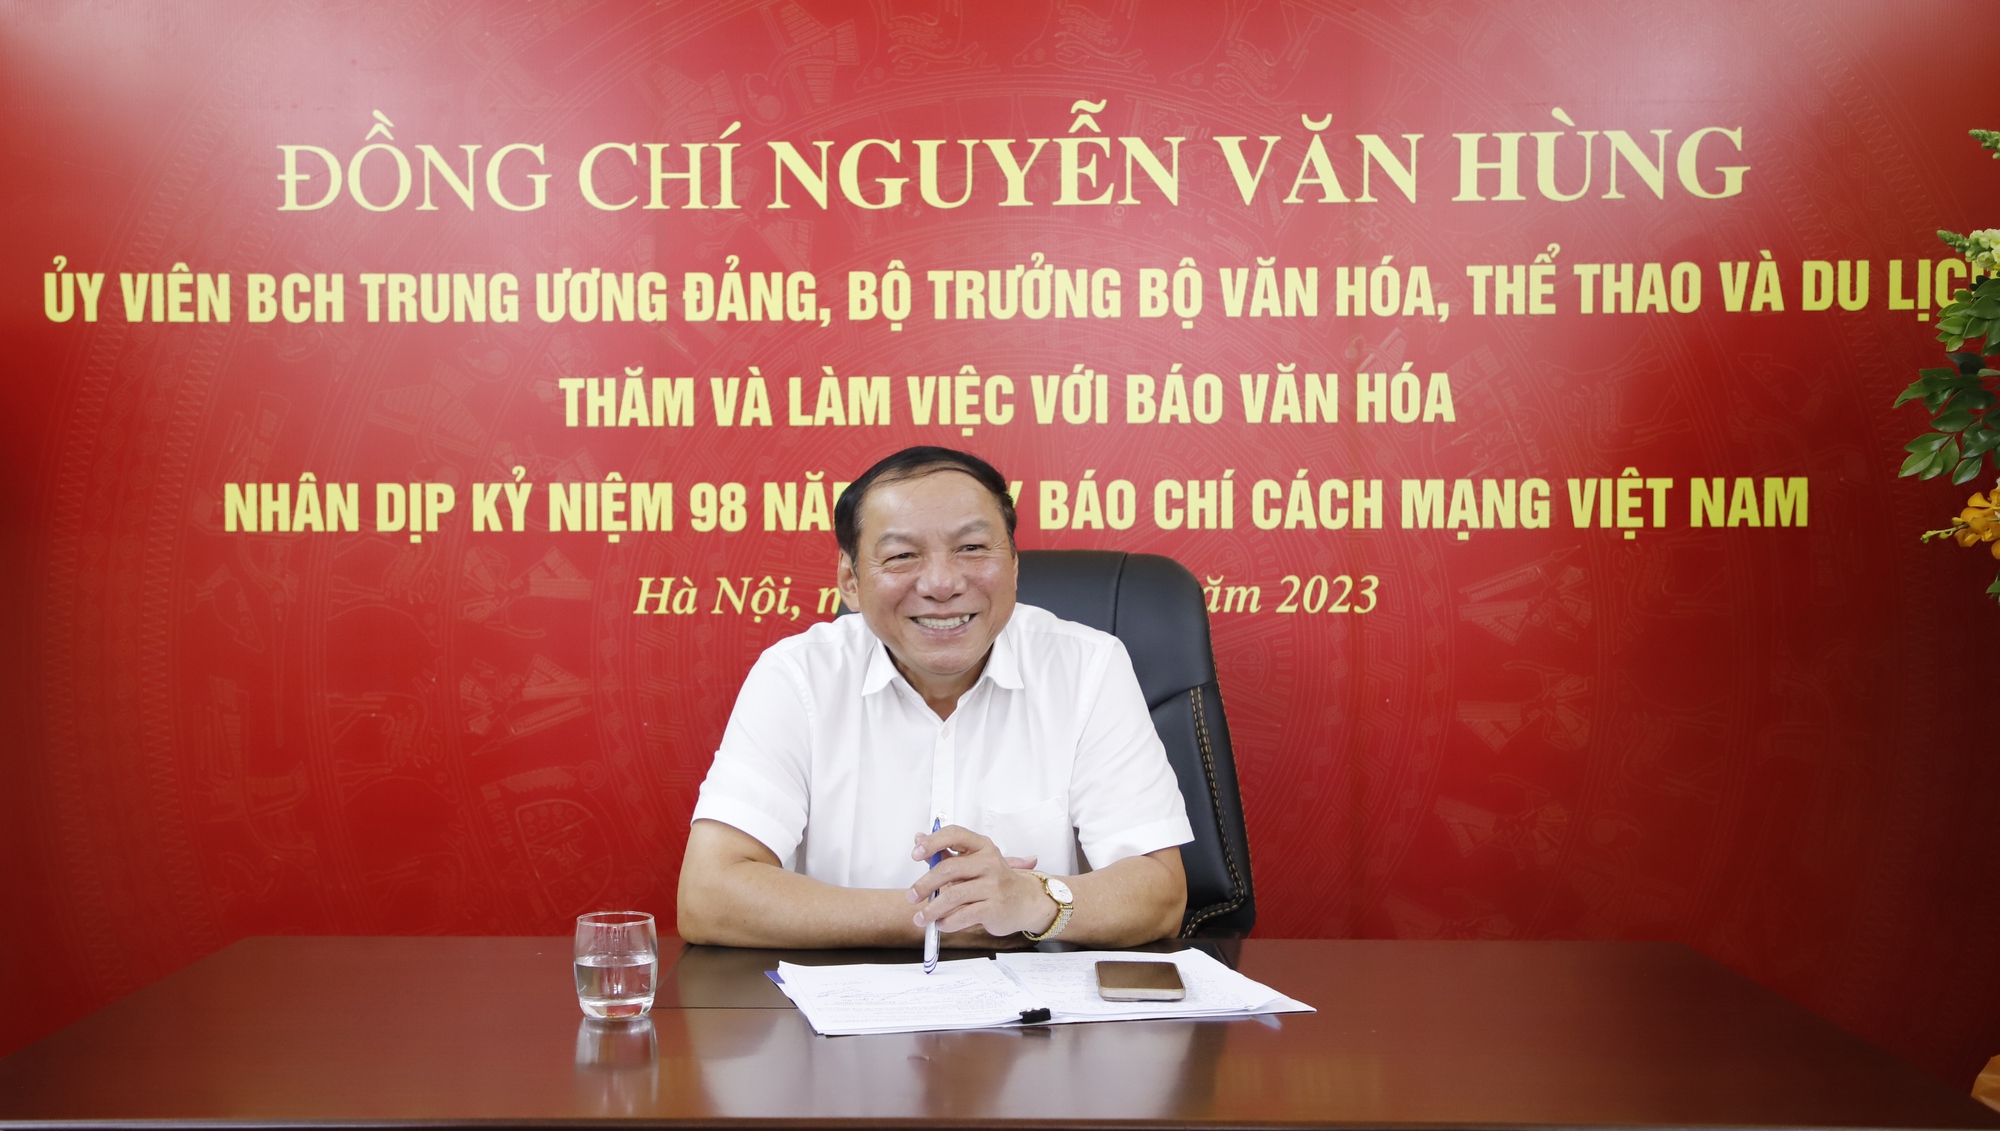 Bộ trưởng Nguyễn Văn Hùng: Báo chí phải đi trước, mở đường, tạo dư luận đồng thuận trong truyền thông chính sách - Ảnh 5.